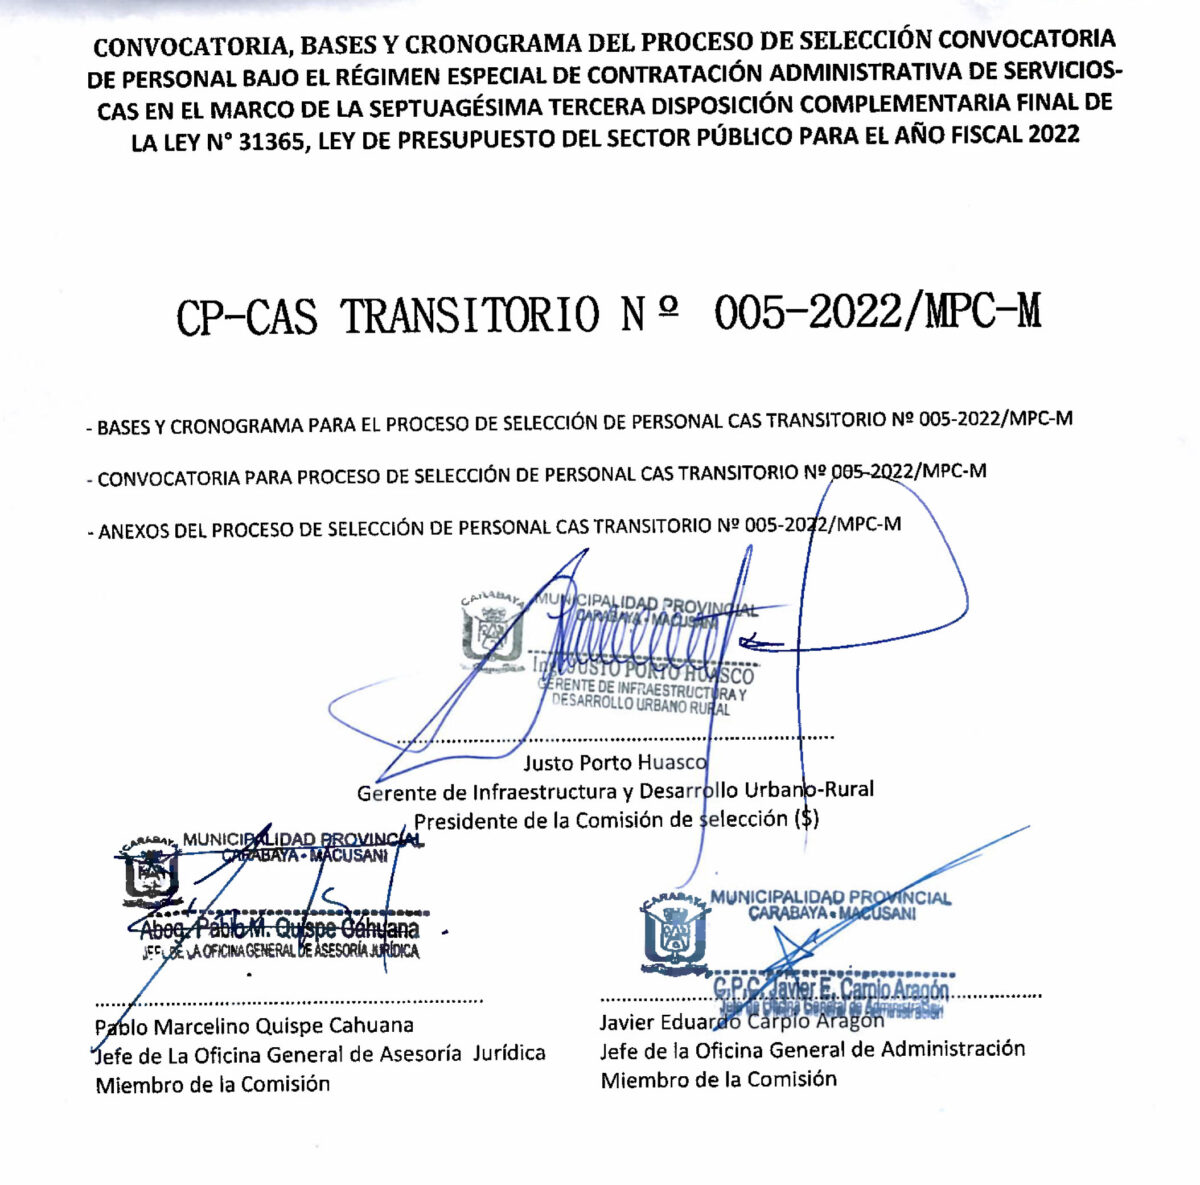 CONVOCATORIA CP-CAS TRANSITORIO N°005-2022/MPC-M